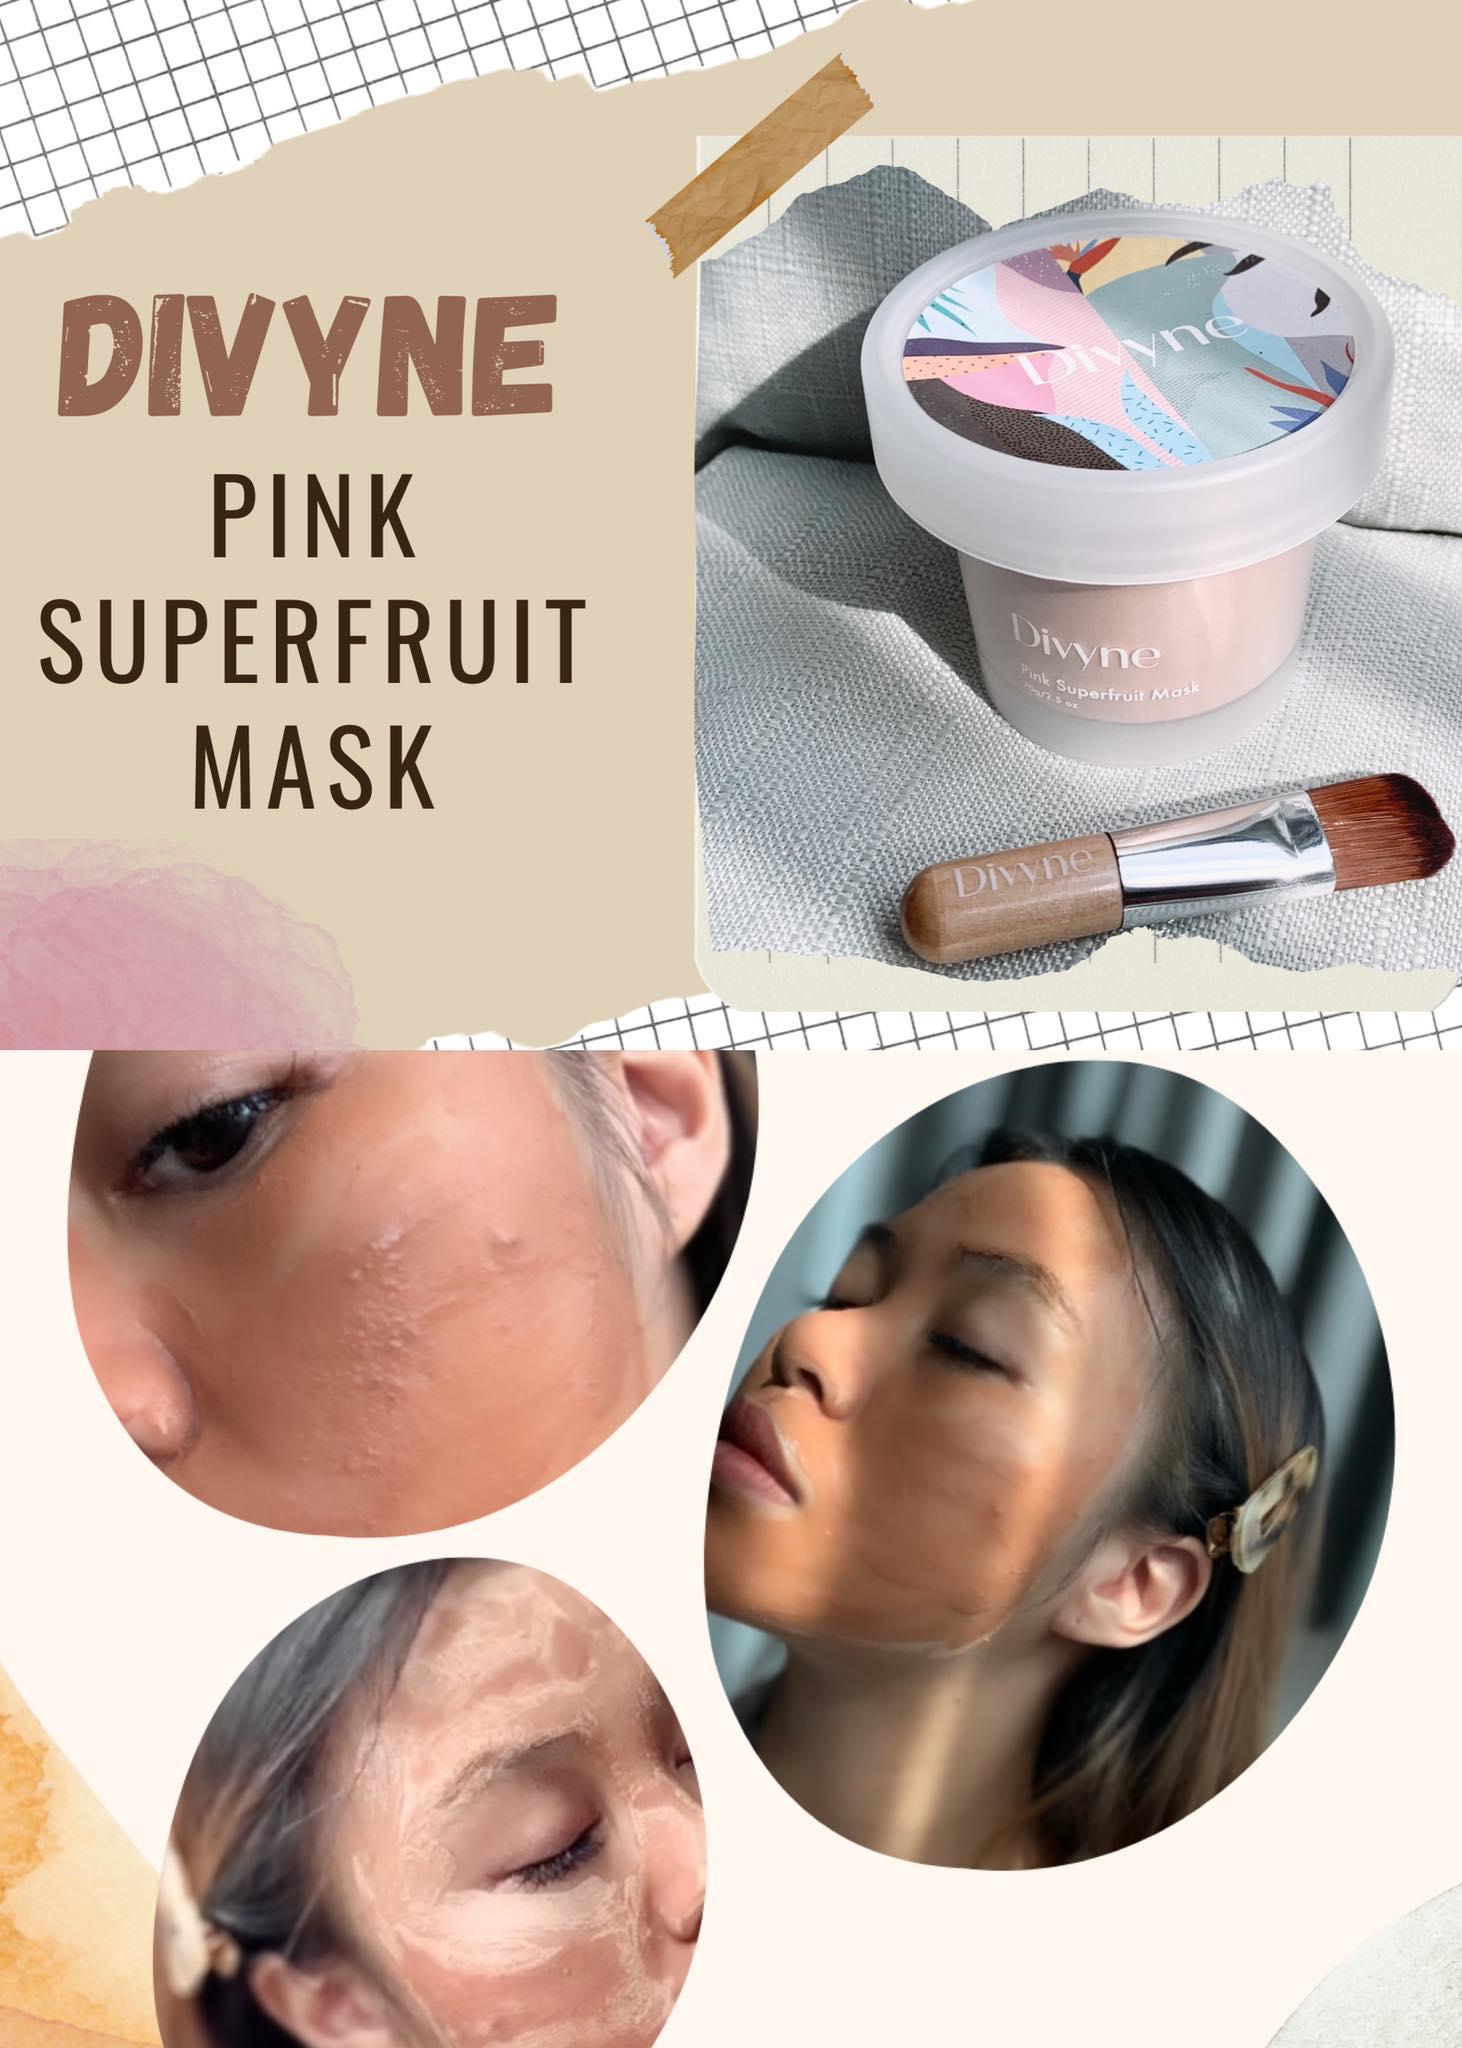 ภาพหน้าปก เผยผิวใสแบบ real beauty ไม่มีรีทัชสิว ด้วย Divyne Pink Superfruit Mask ที่:0